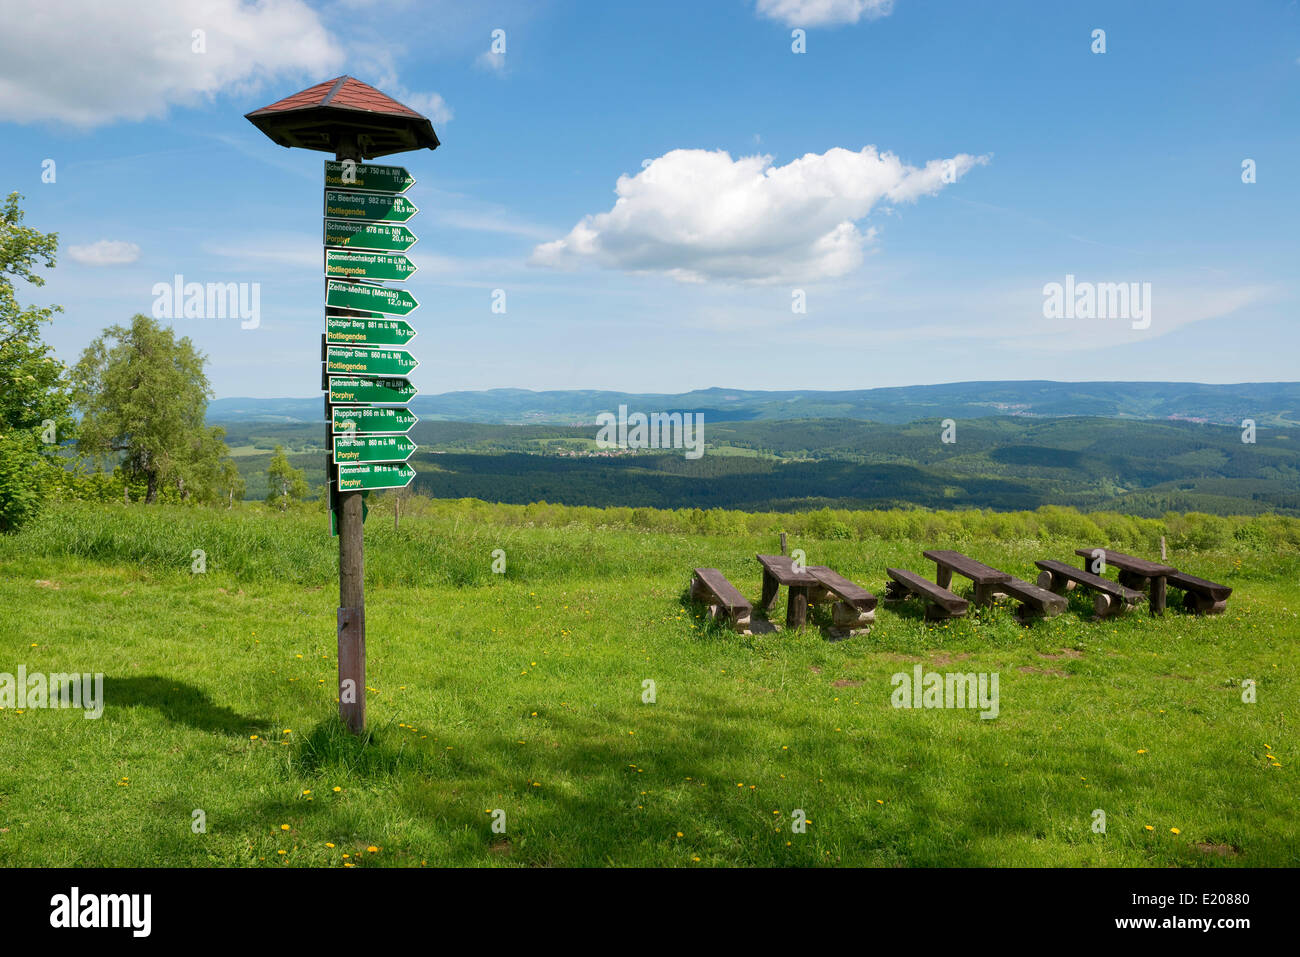 Signsposts, marcadores de distancia, bancos de madera y mesas en Mt Dolmar con vistas de la Selva de Turingia, Turingia, Alemania Foto de stock